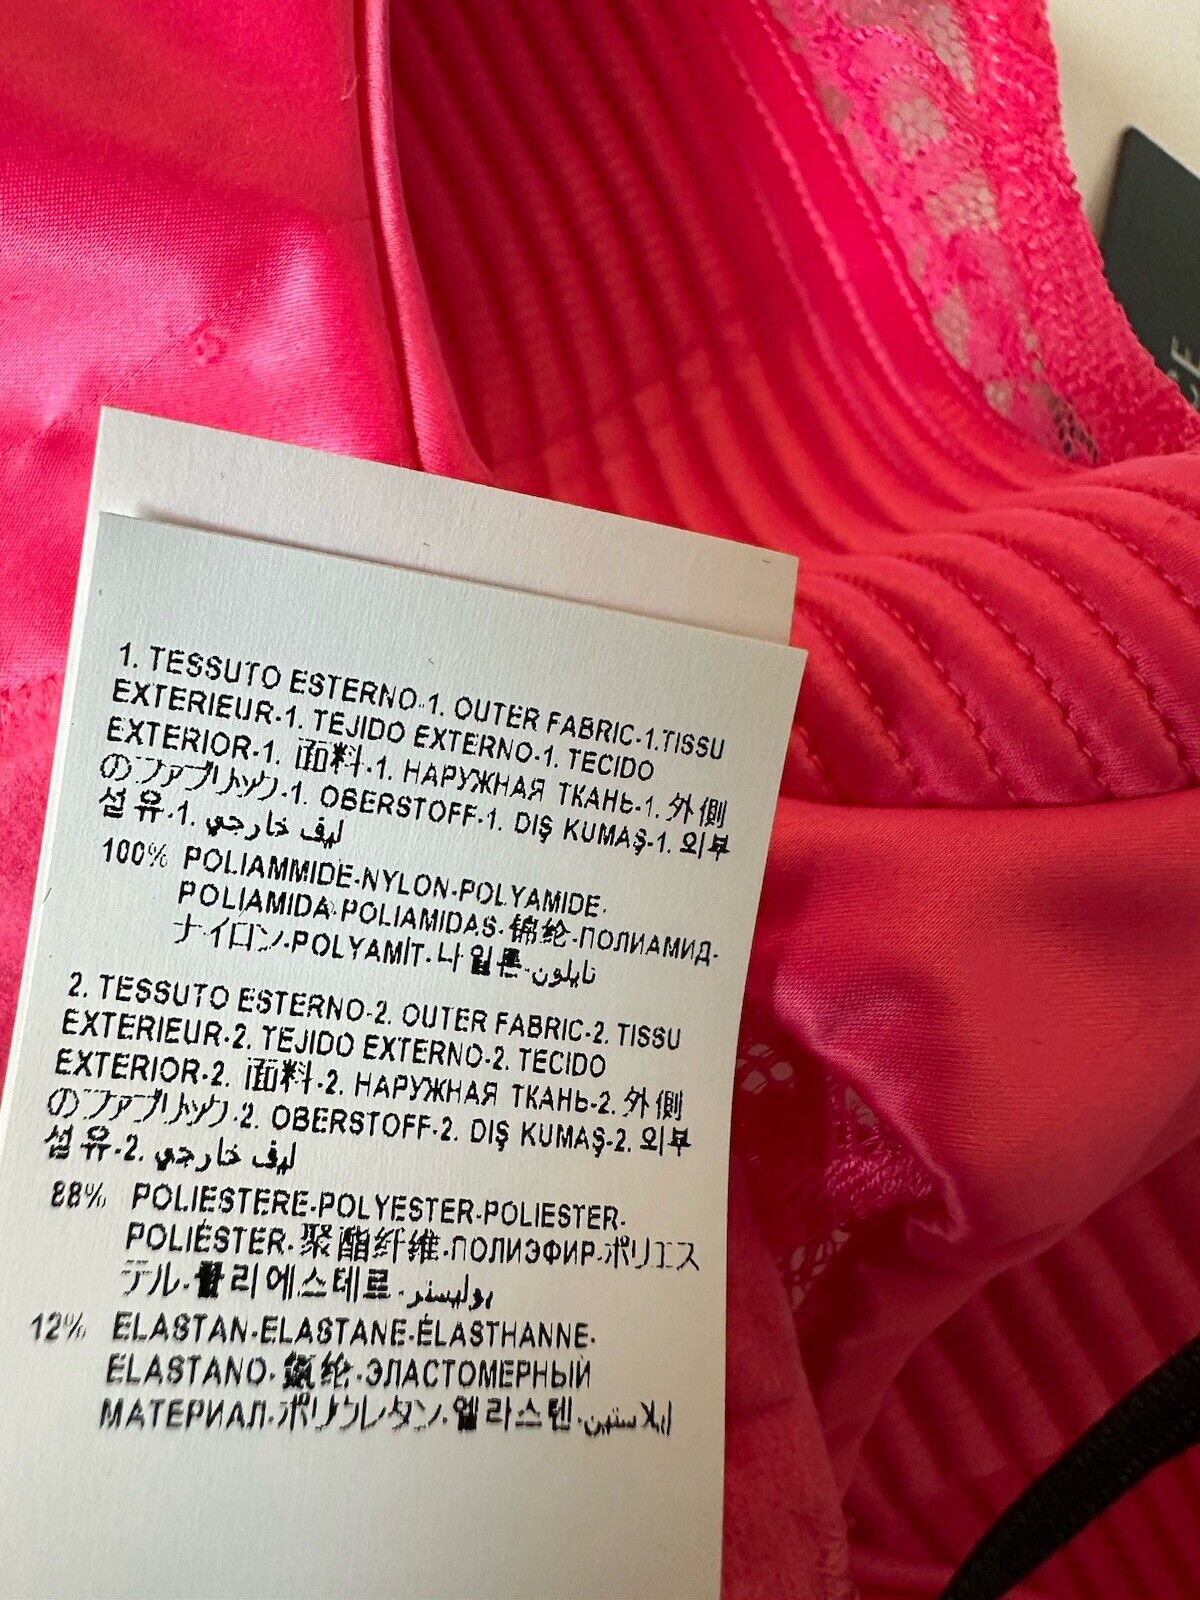 Versace Women’s Greek Key Print Pink Runway Bralette 2C Italy 1010115 NWT $550